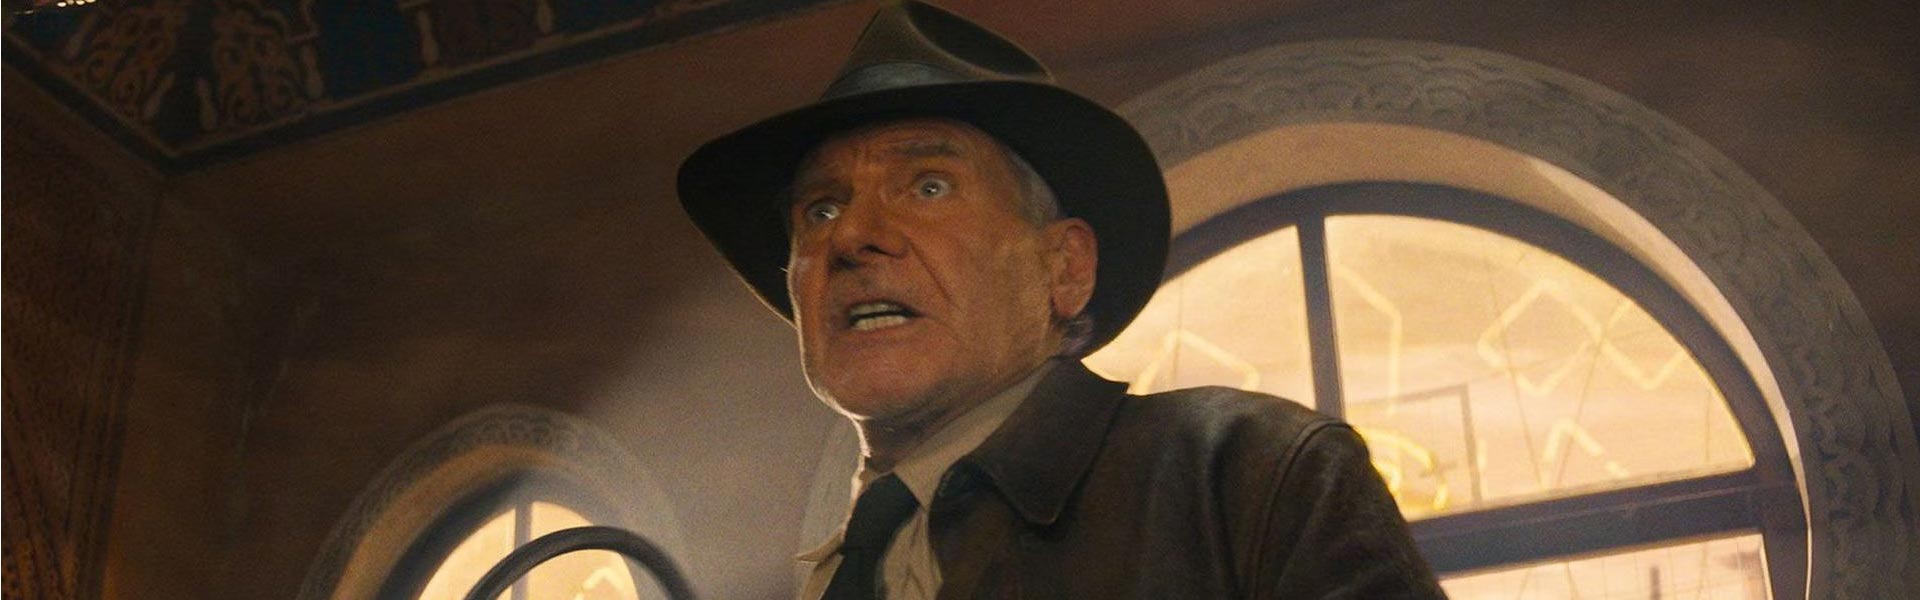 Crítica de ‘Indiana Jones y el Dial del destino’: una película perdida en el tiempo